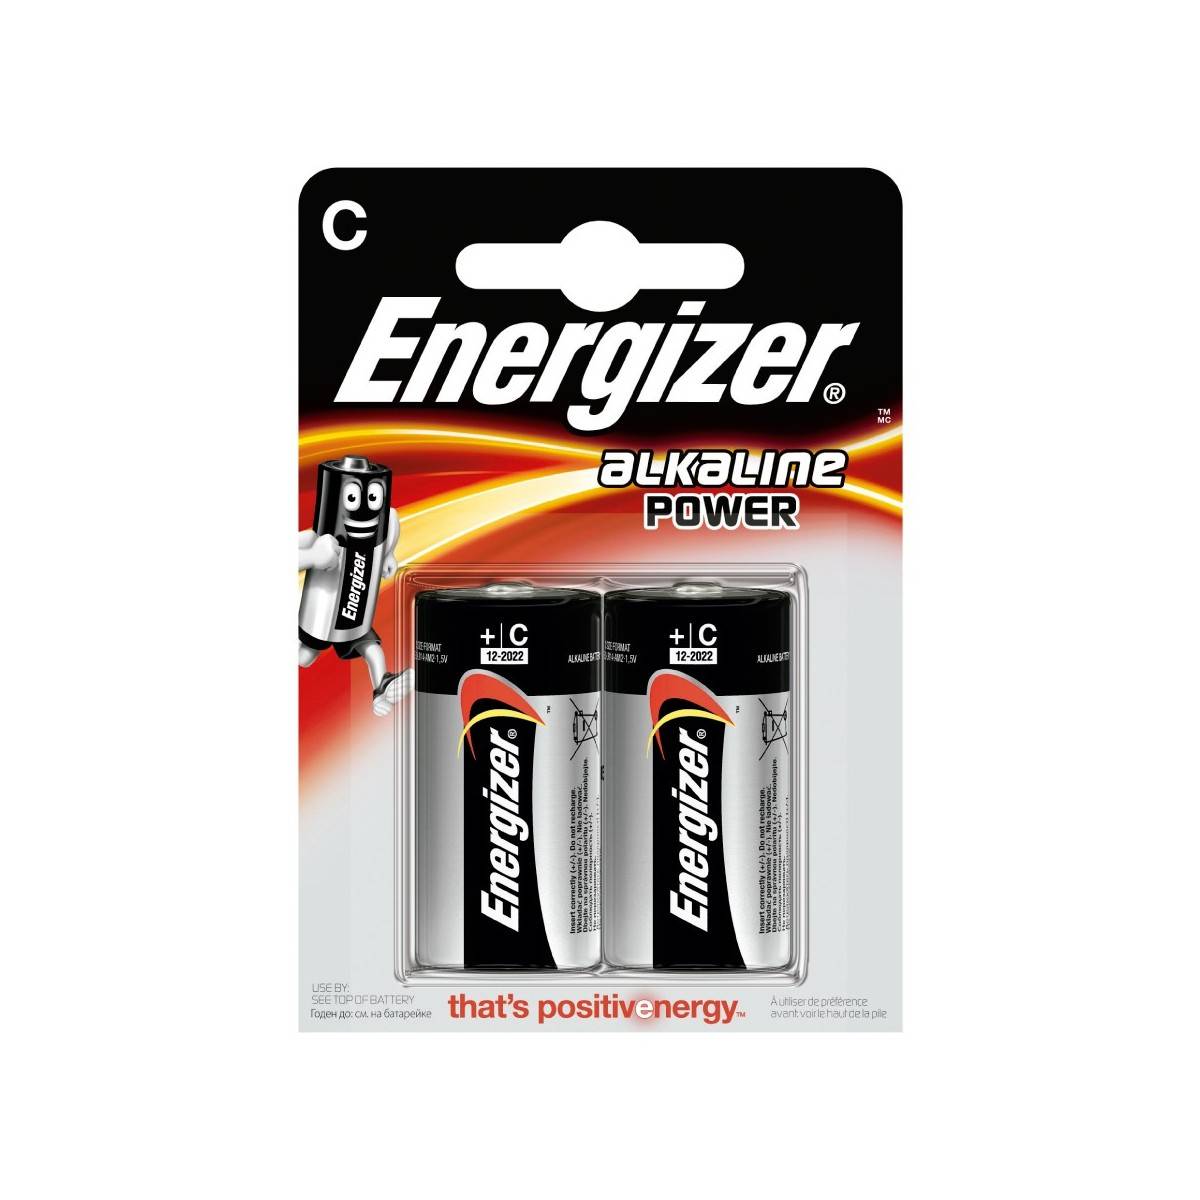 Energizer Alkaline Power LR14 (C) Battery Blister of 2 pcs.